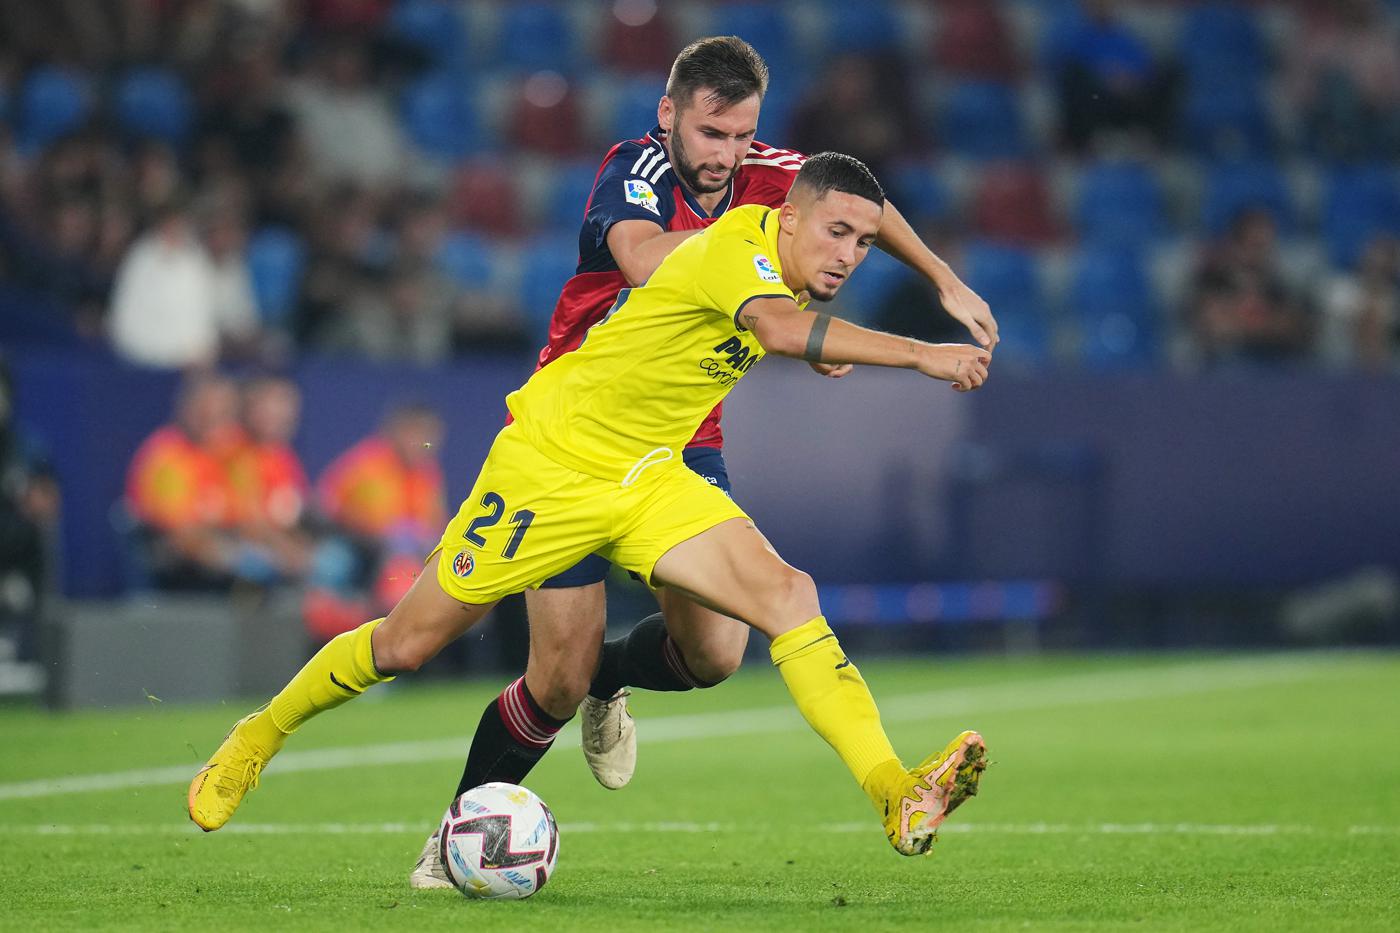 Osasuna - Villarreal - 0:3. Spanien UEFA-Meisterschaft, Spieltag 26. Spielbericht, Statistik.